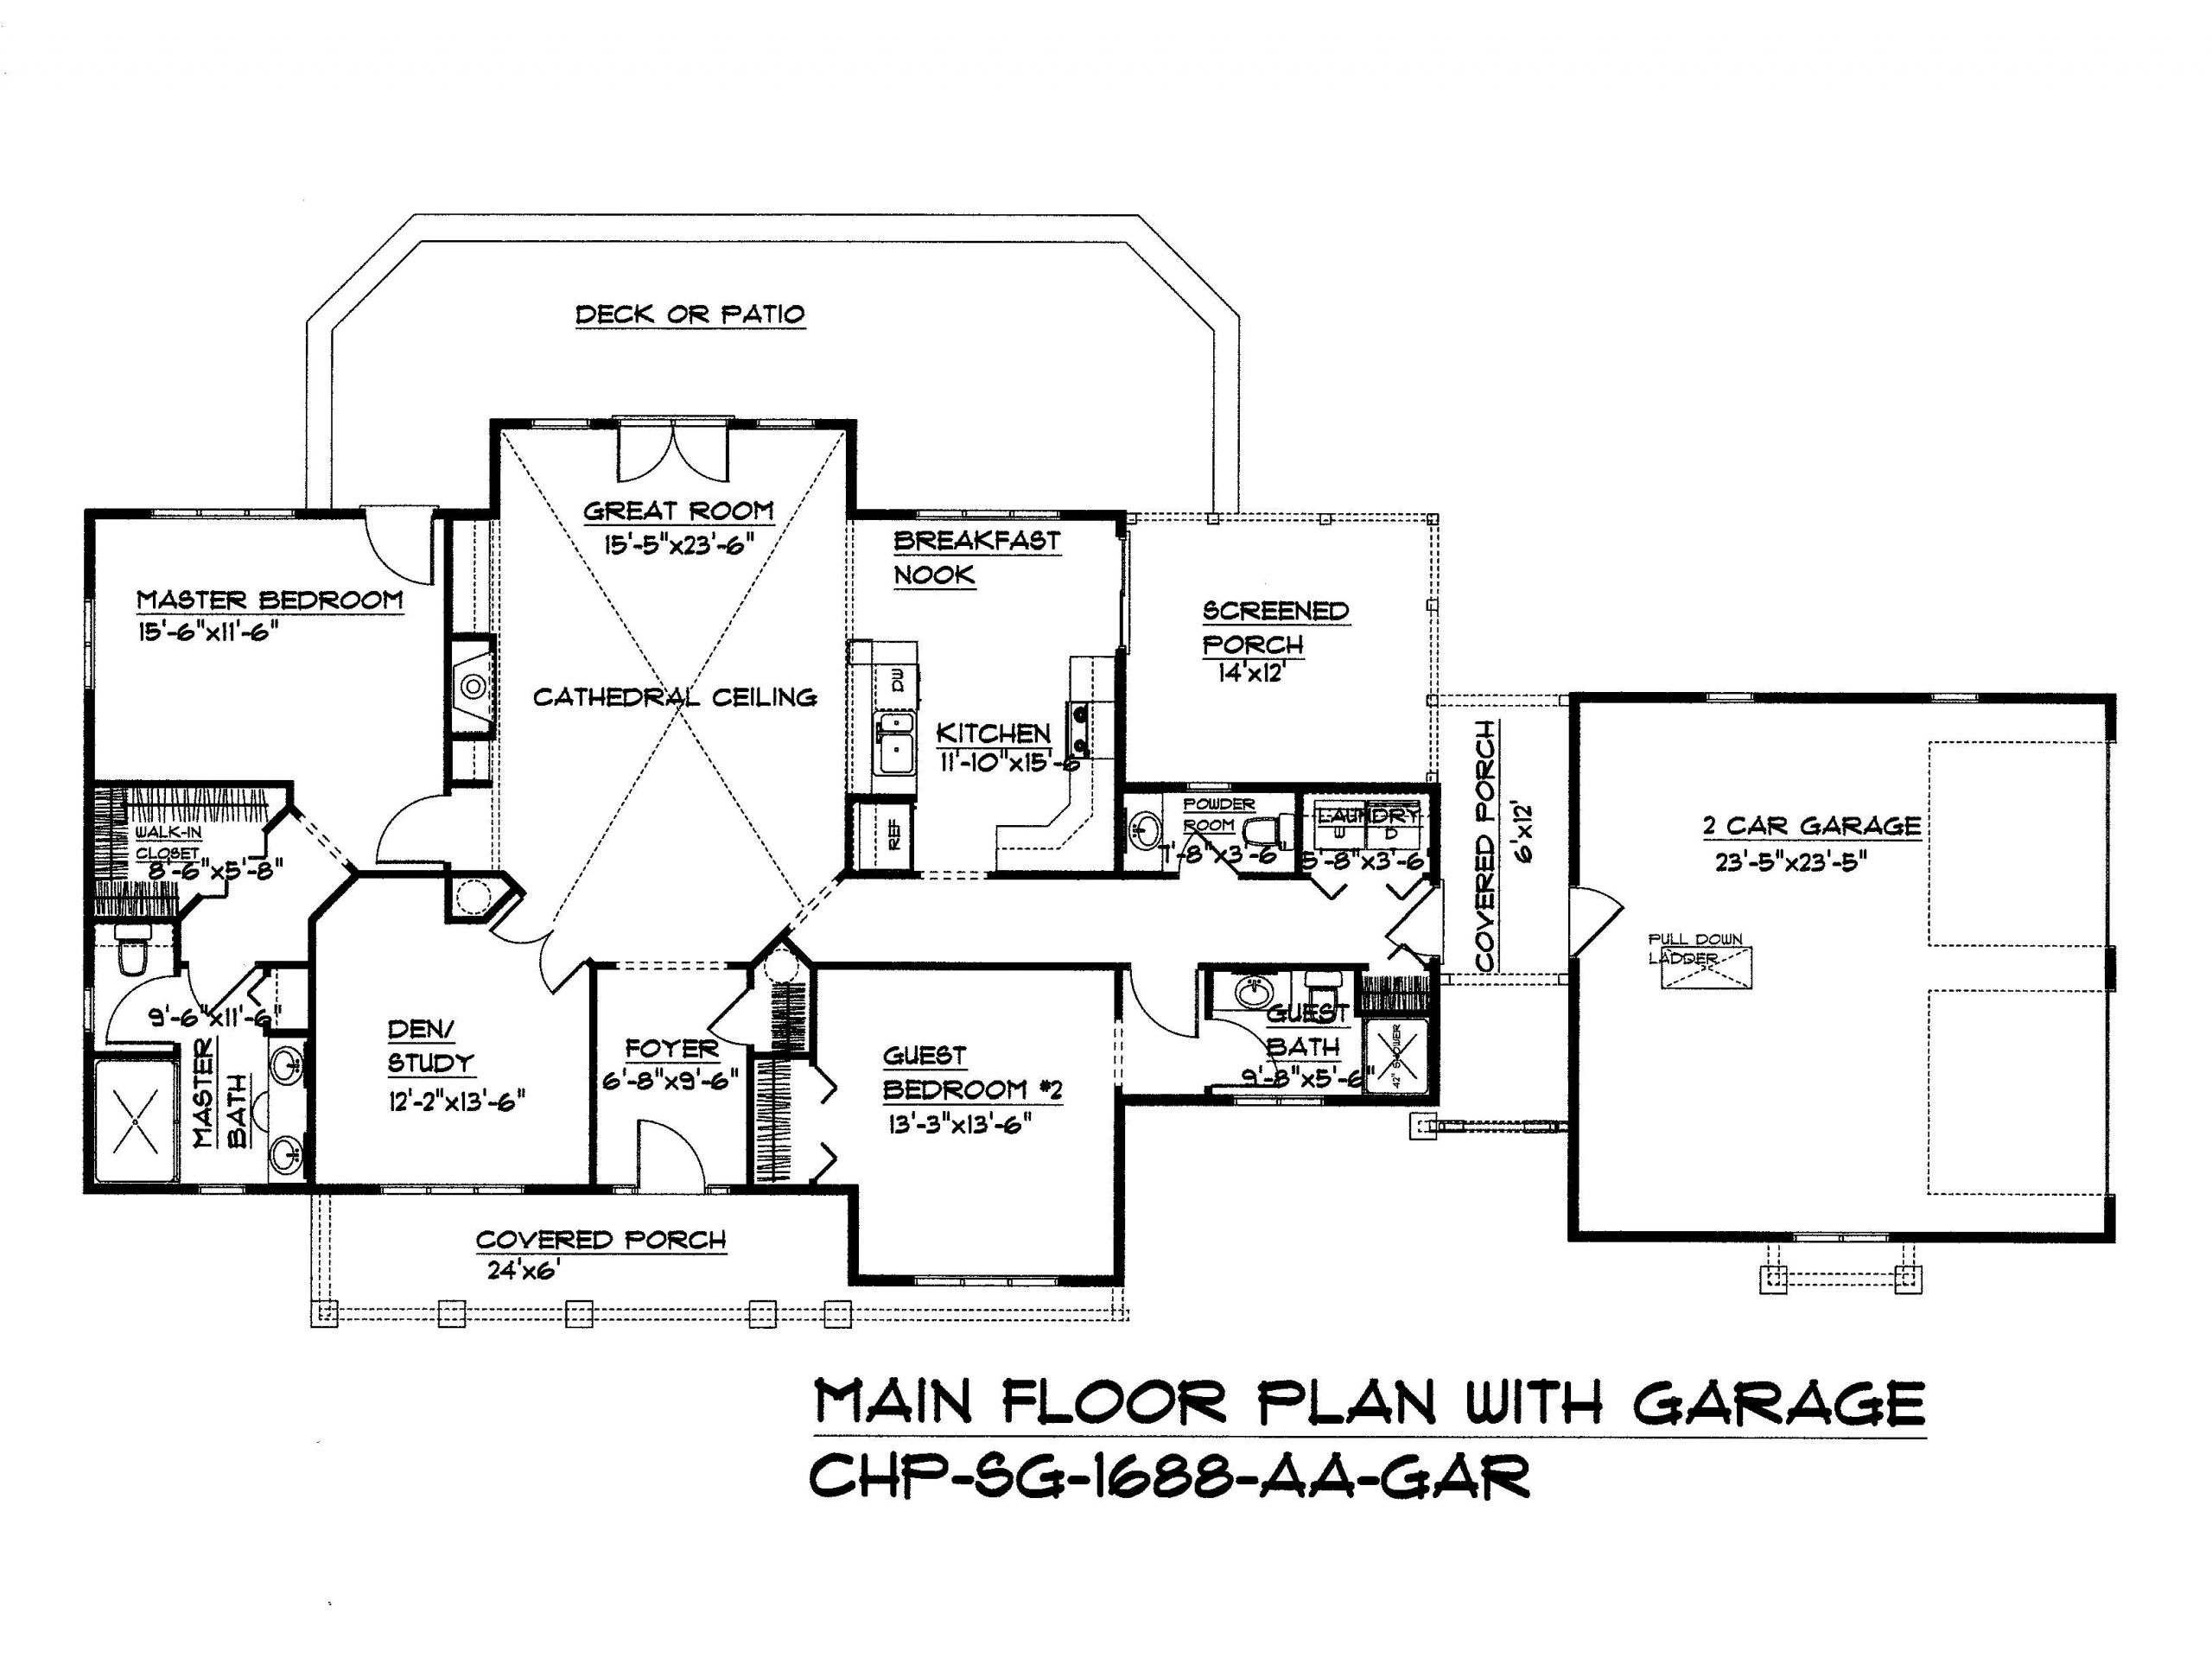 Split Master Bedroom Floor Plans
 Split bedroom dual master suite floor plan SG 1688 AA by